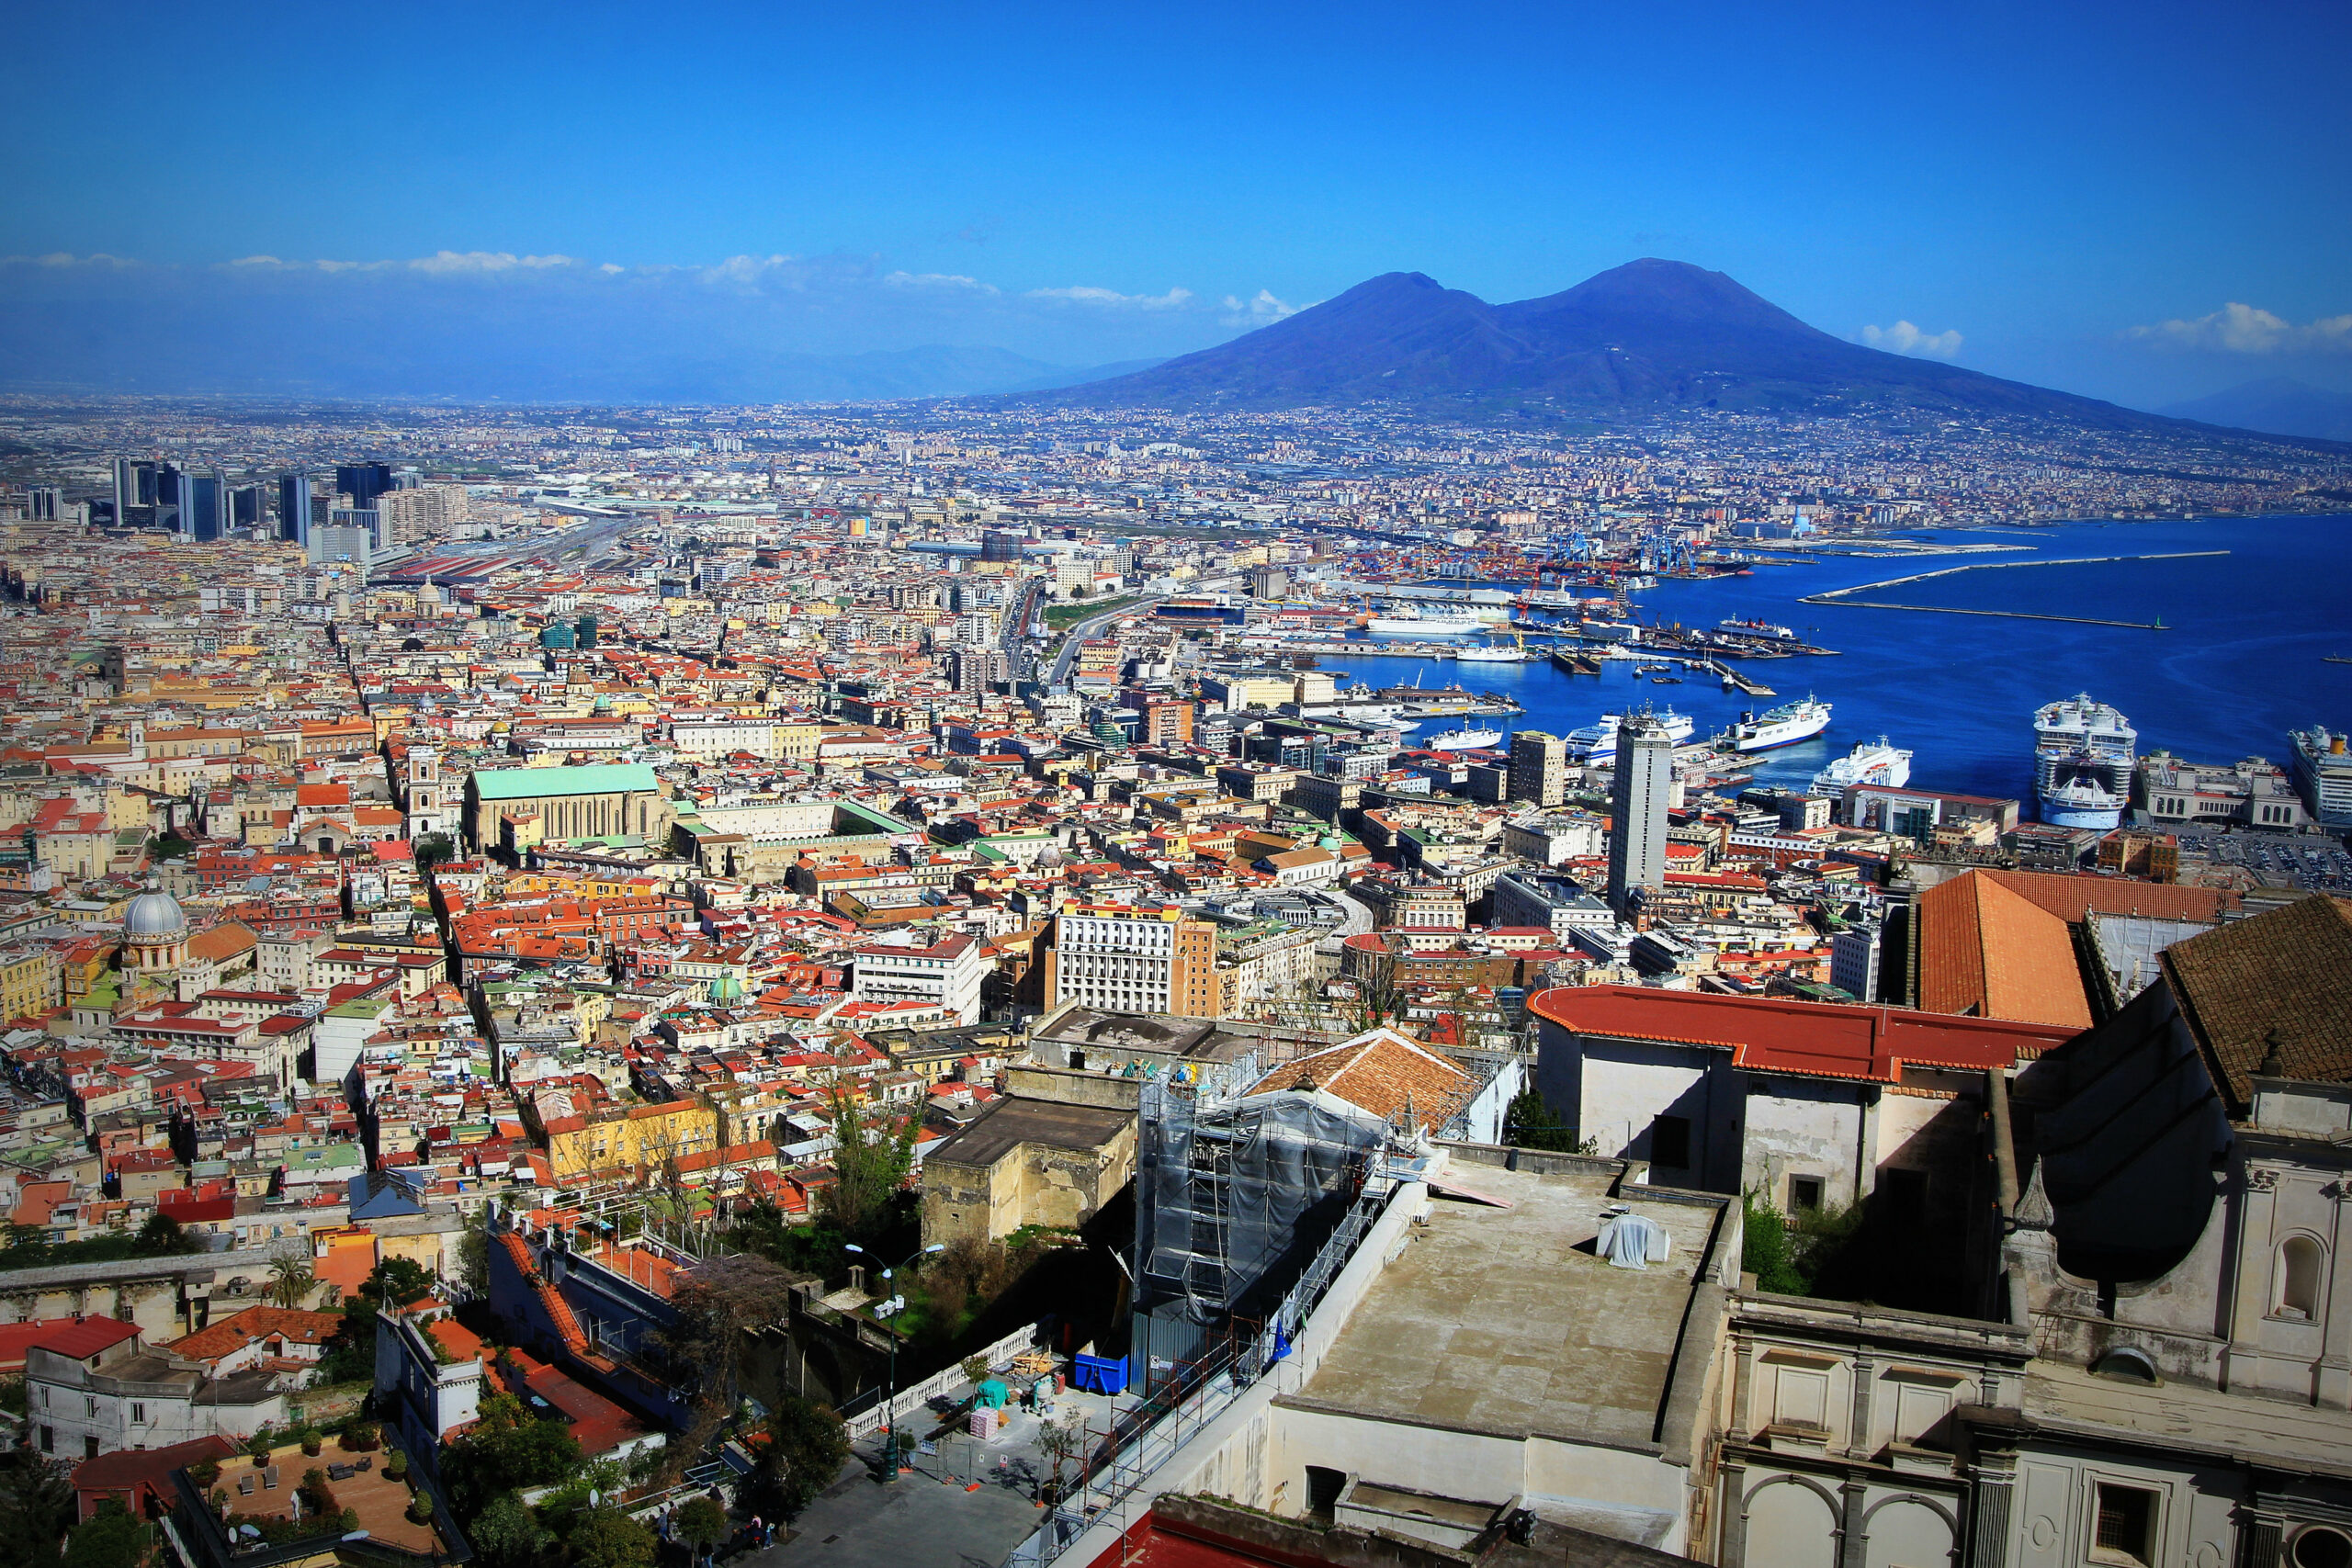 Unmittelbar neben dem Vesuv liegt die Großstadt Neapel mit rund 900.000 Einwohnern.